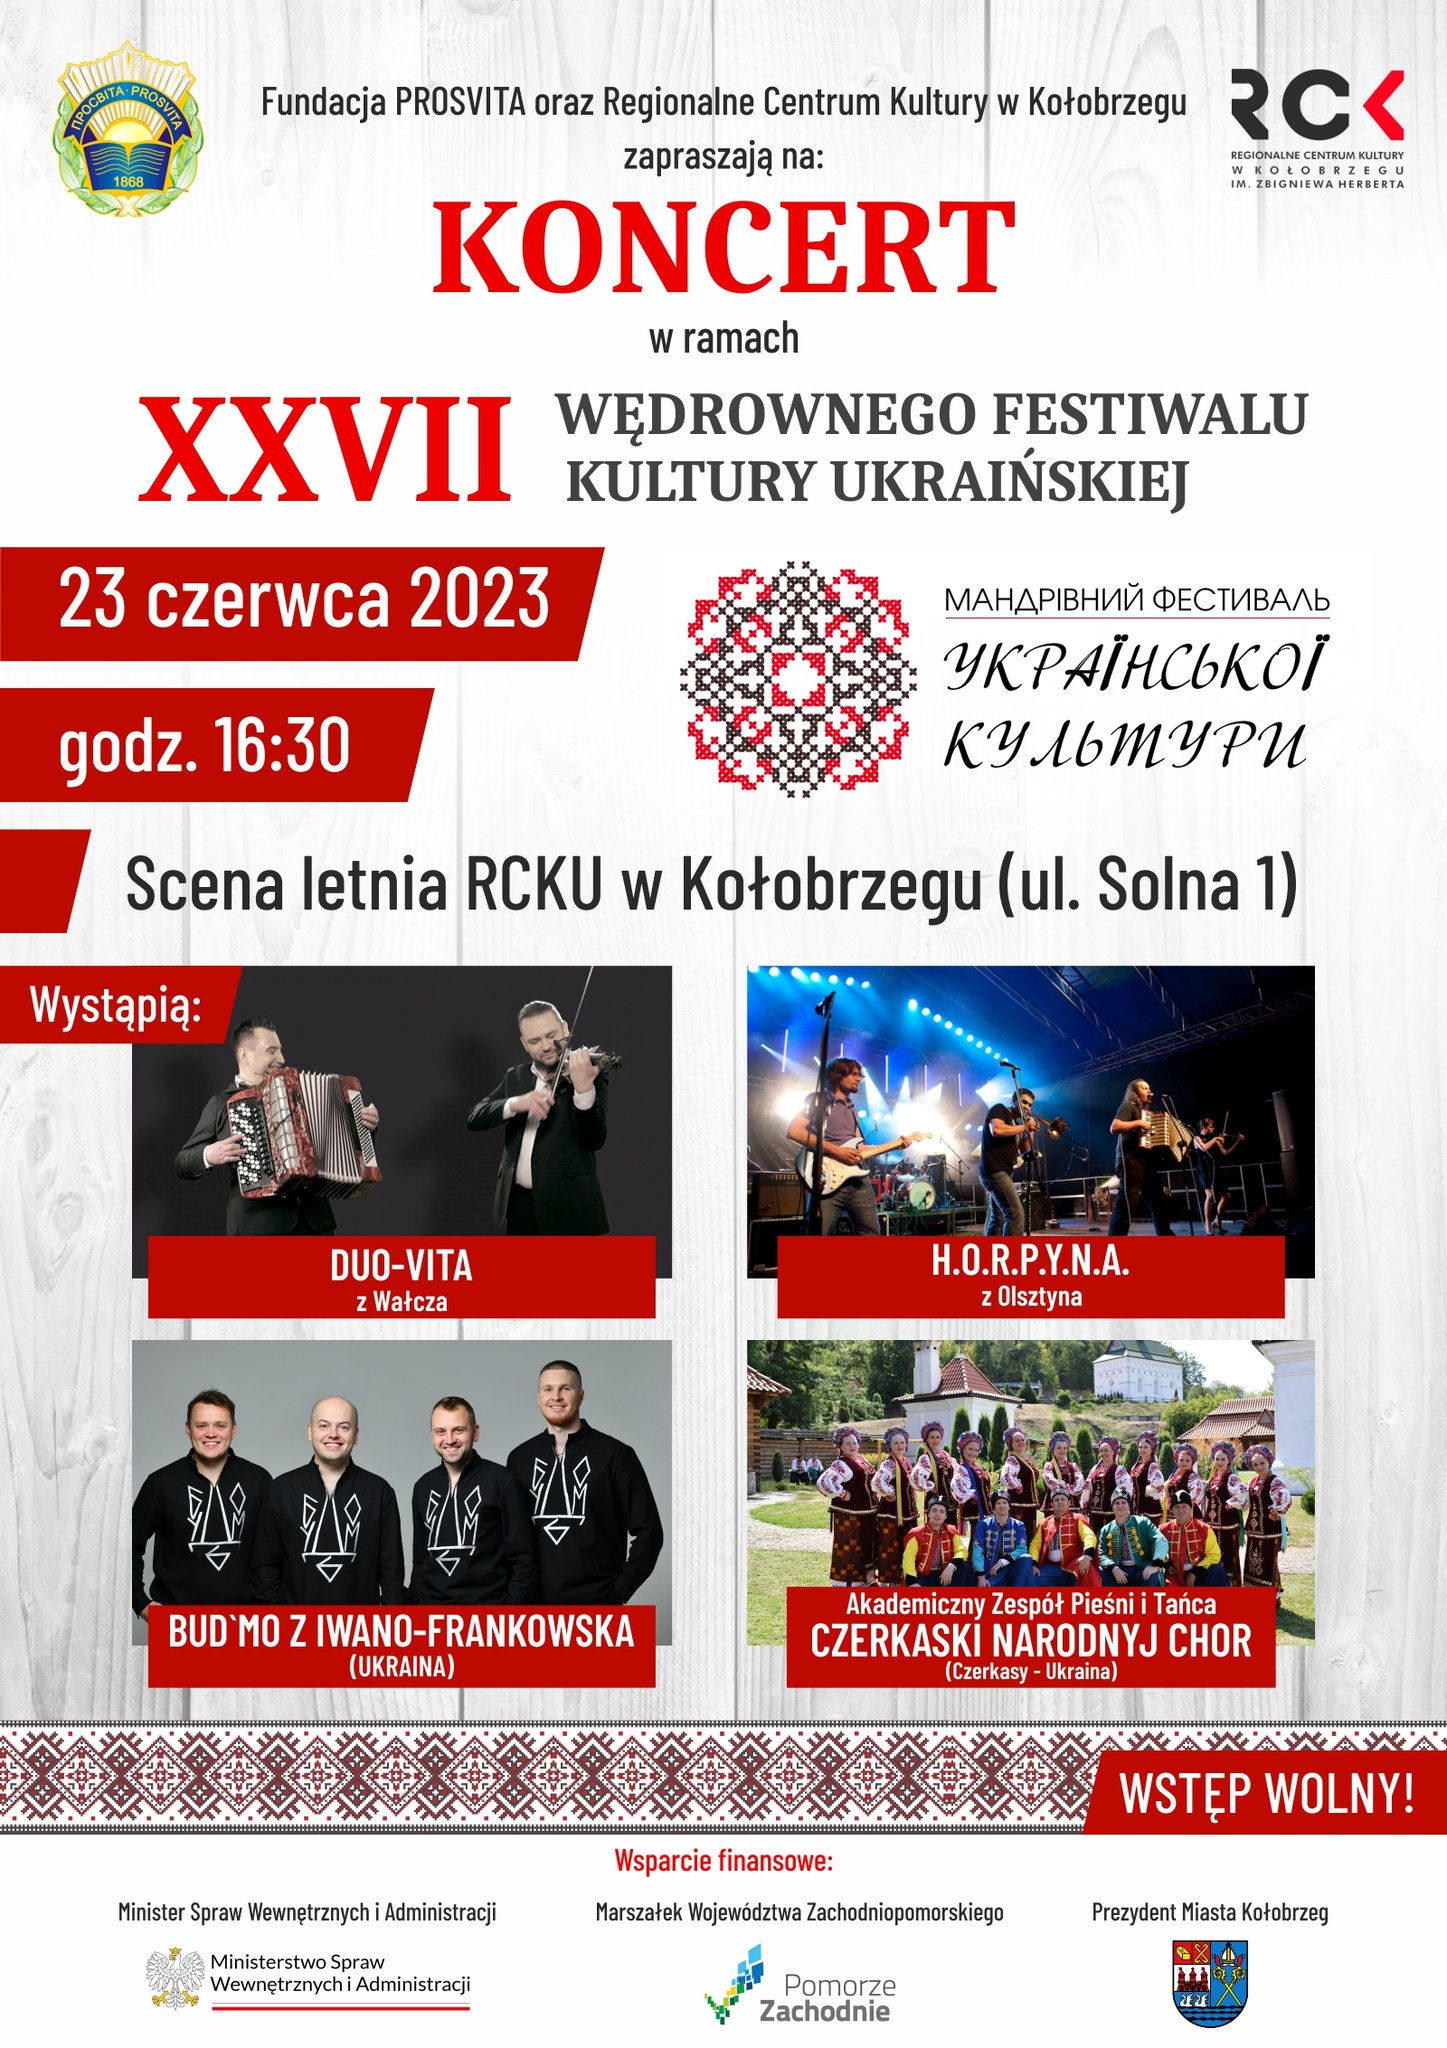 XXVII Wędrowny Festiwal Kultury Ukraińskiej